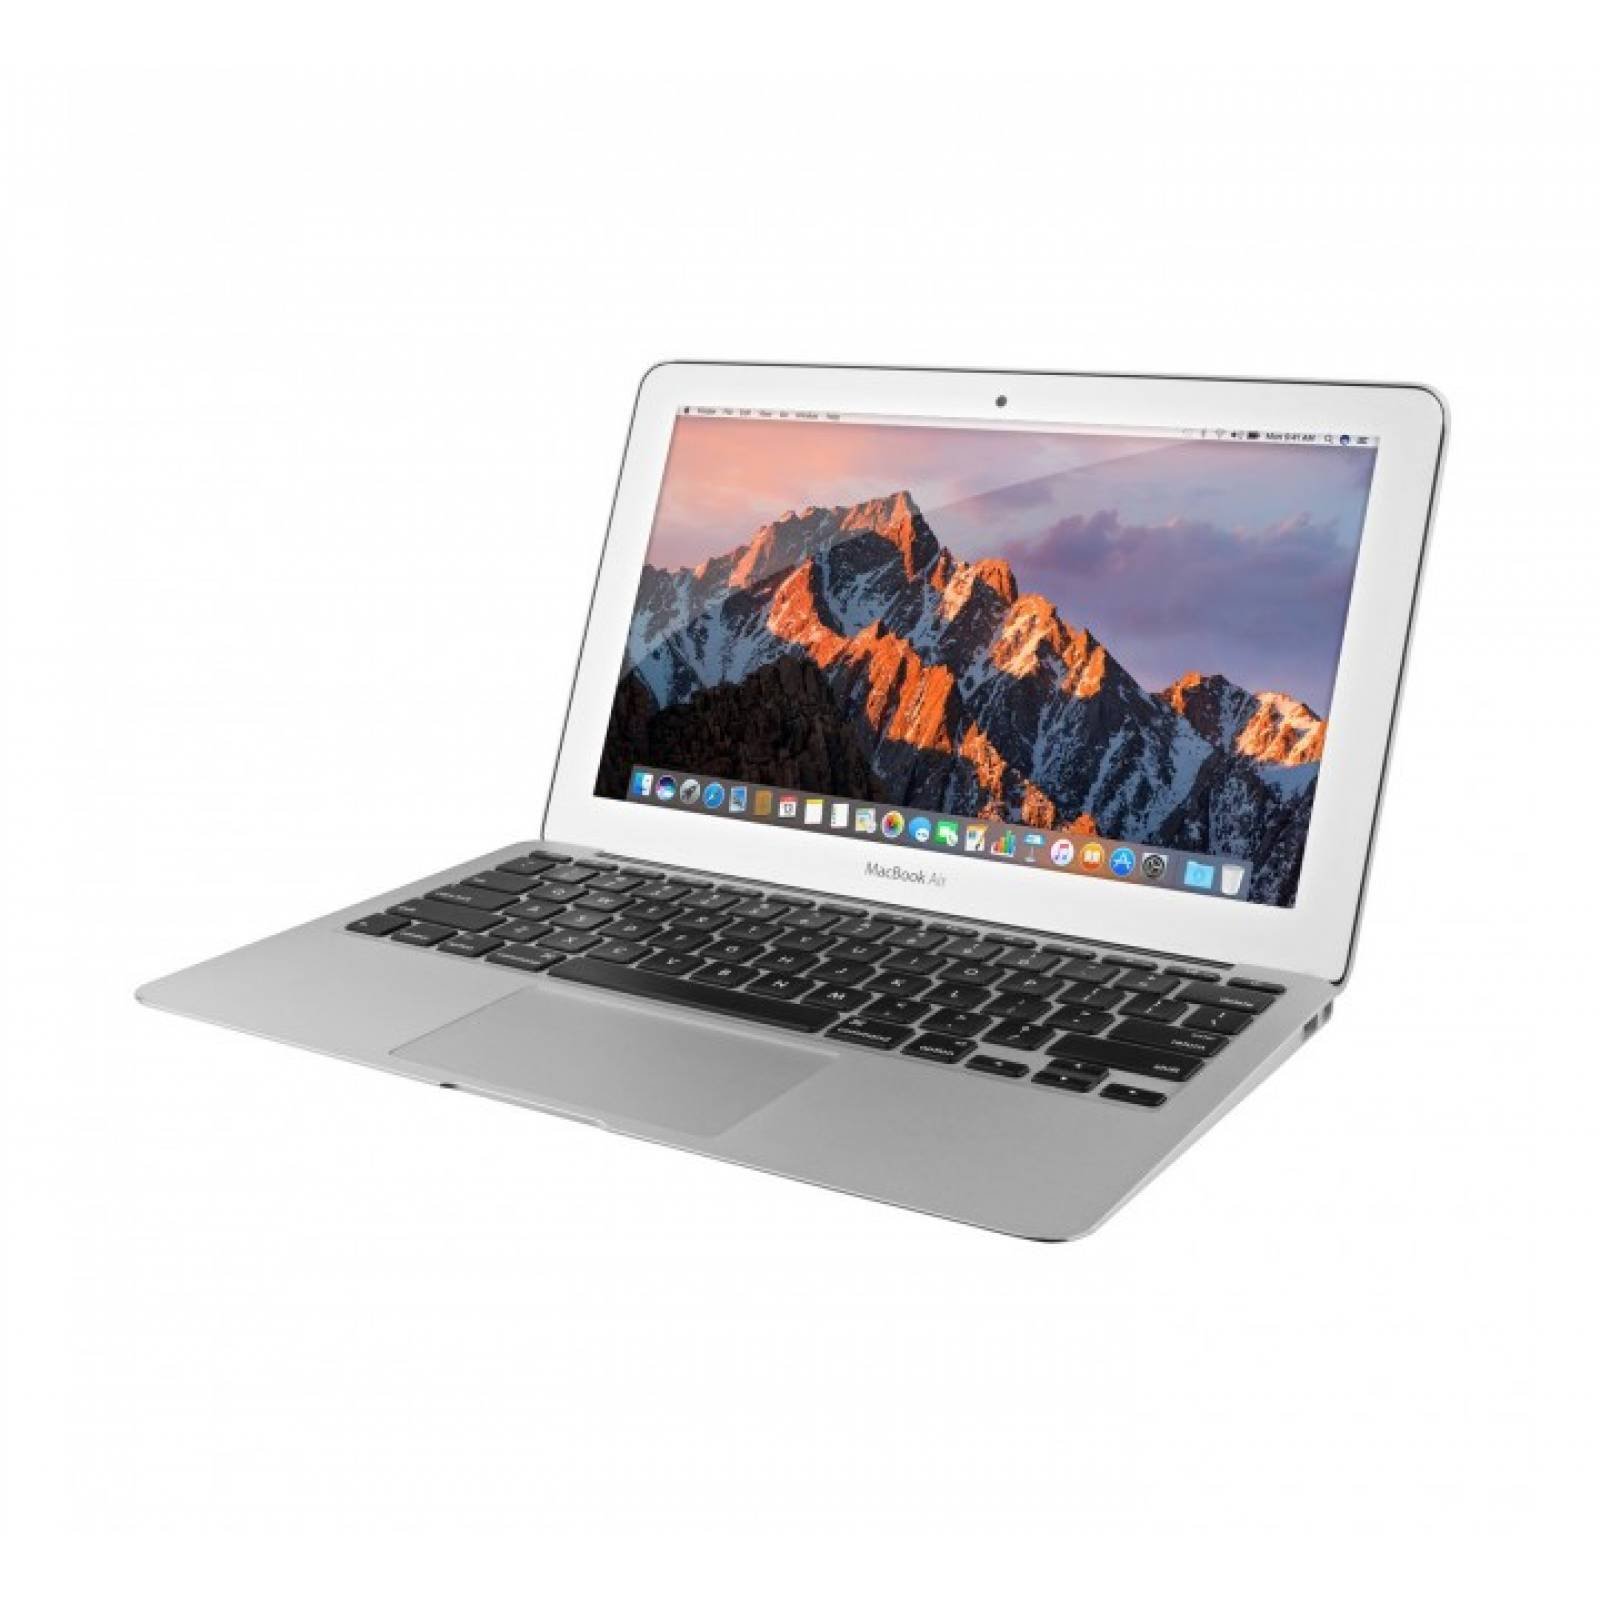 Laptop portátil Apple MacBook Air 11.6 Pulg Reacondicionado